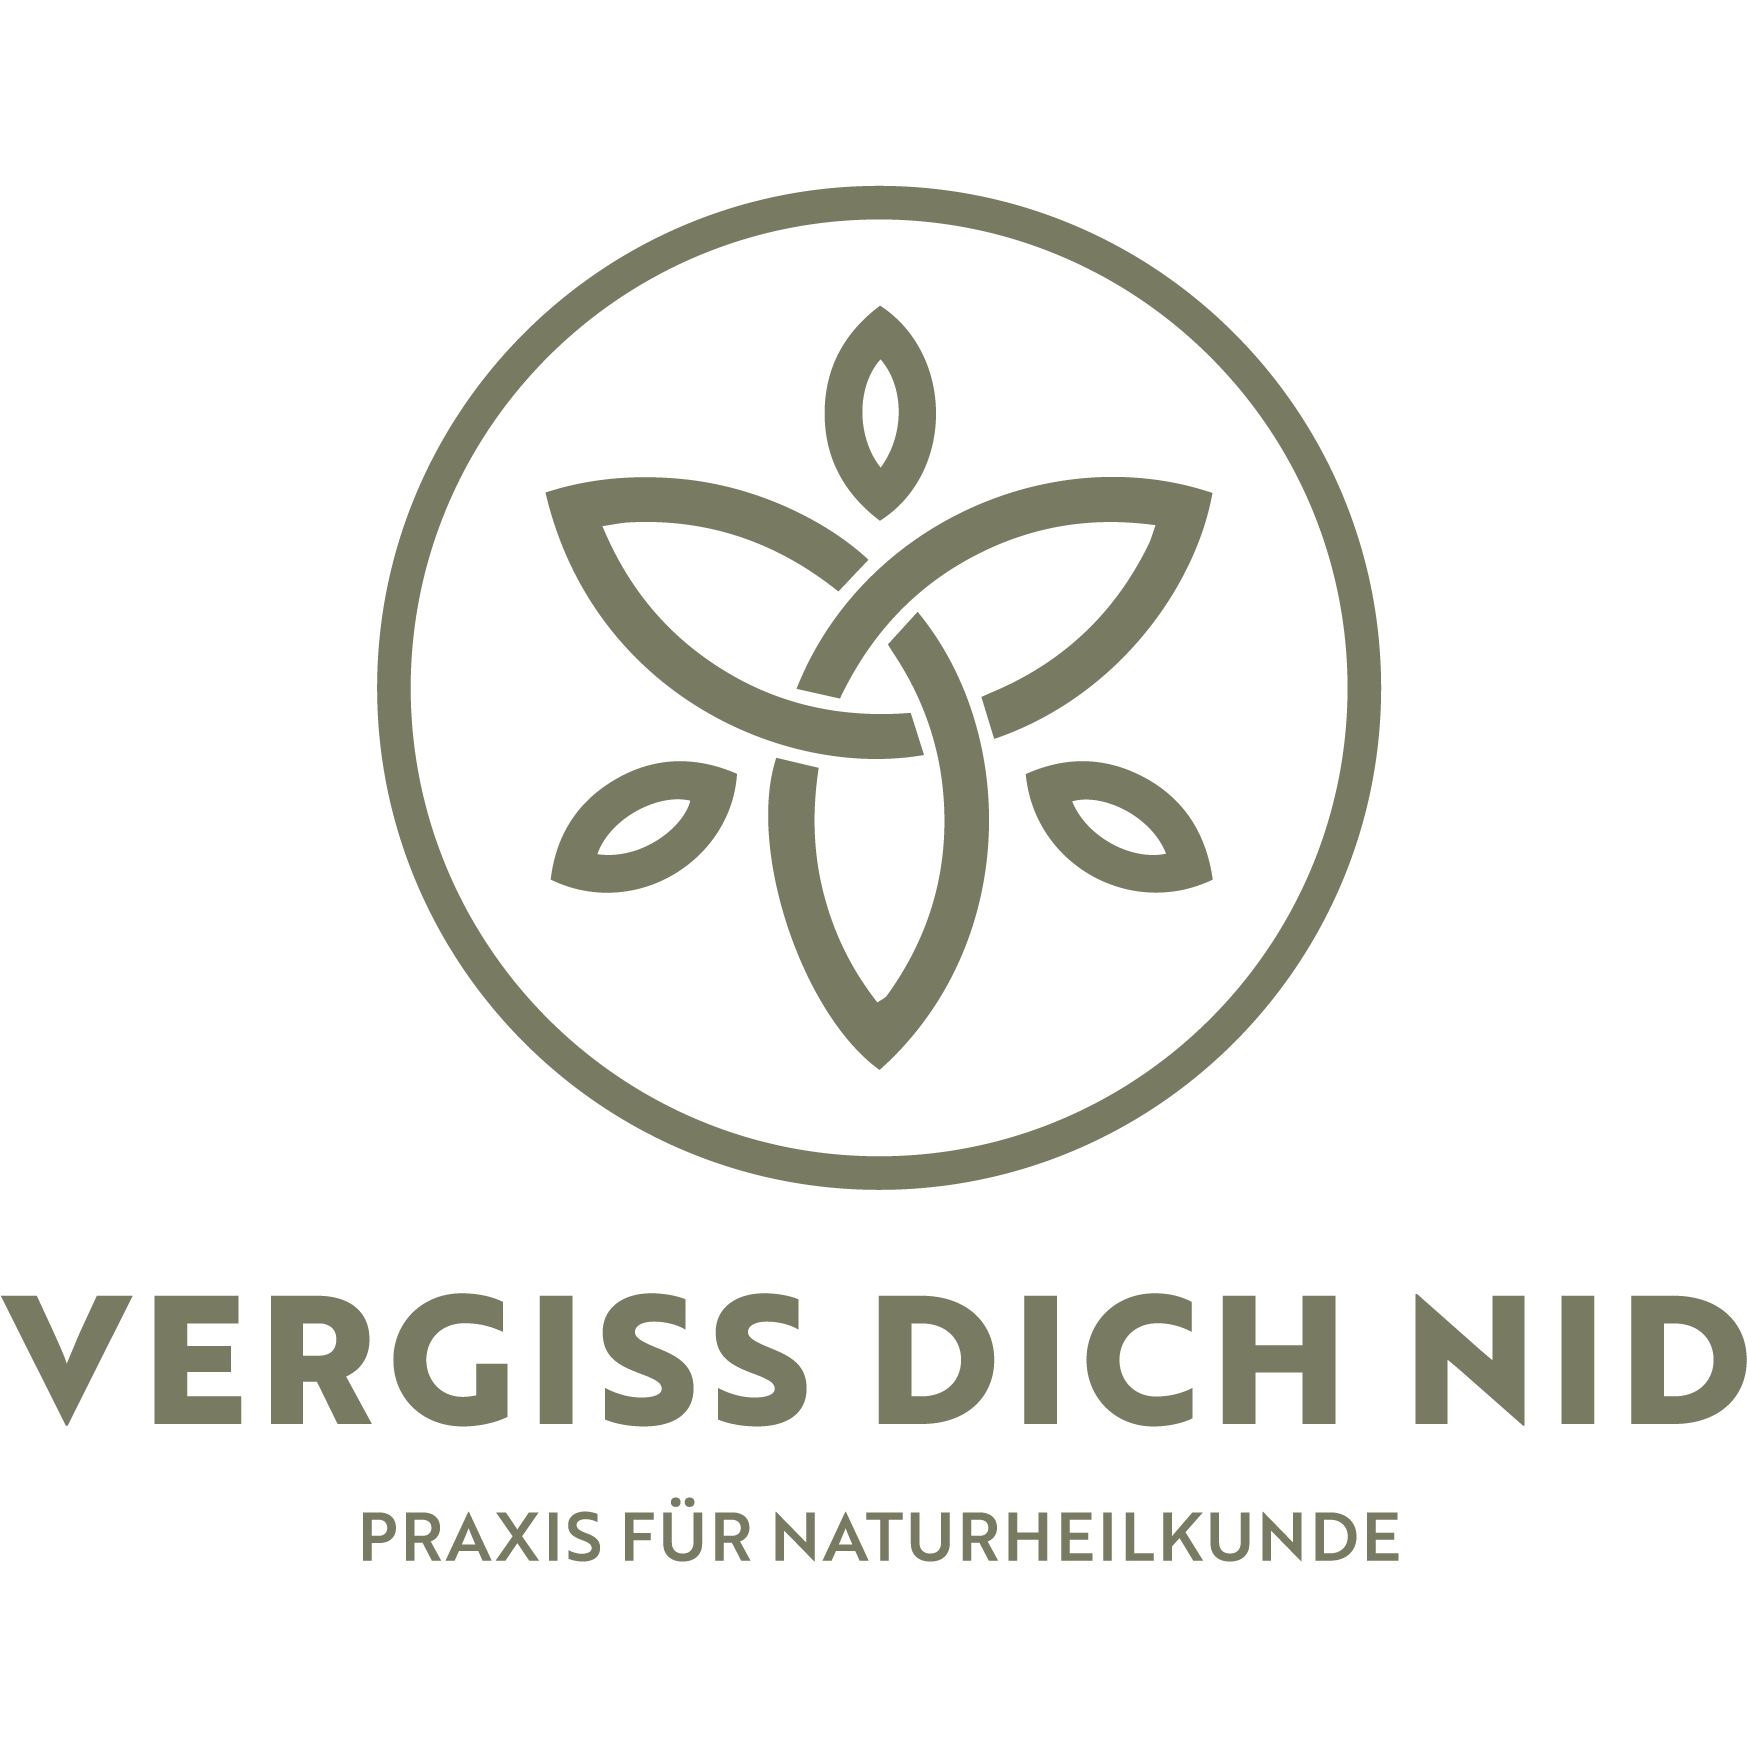 Vergiss Dich nid, Praxis für Naturheilkunde Logo